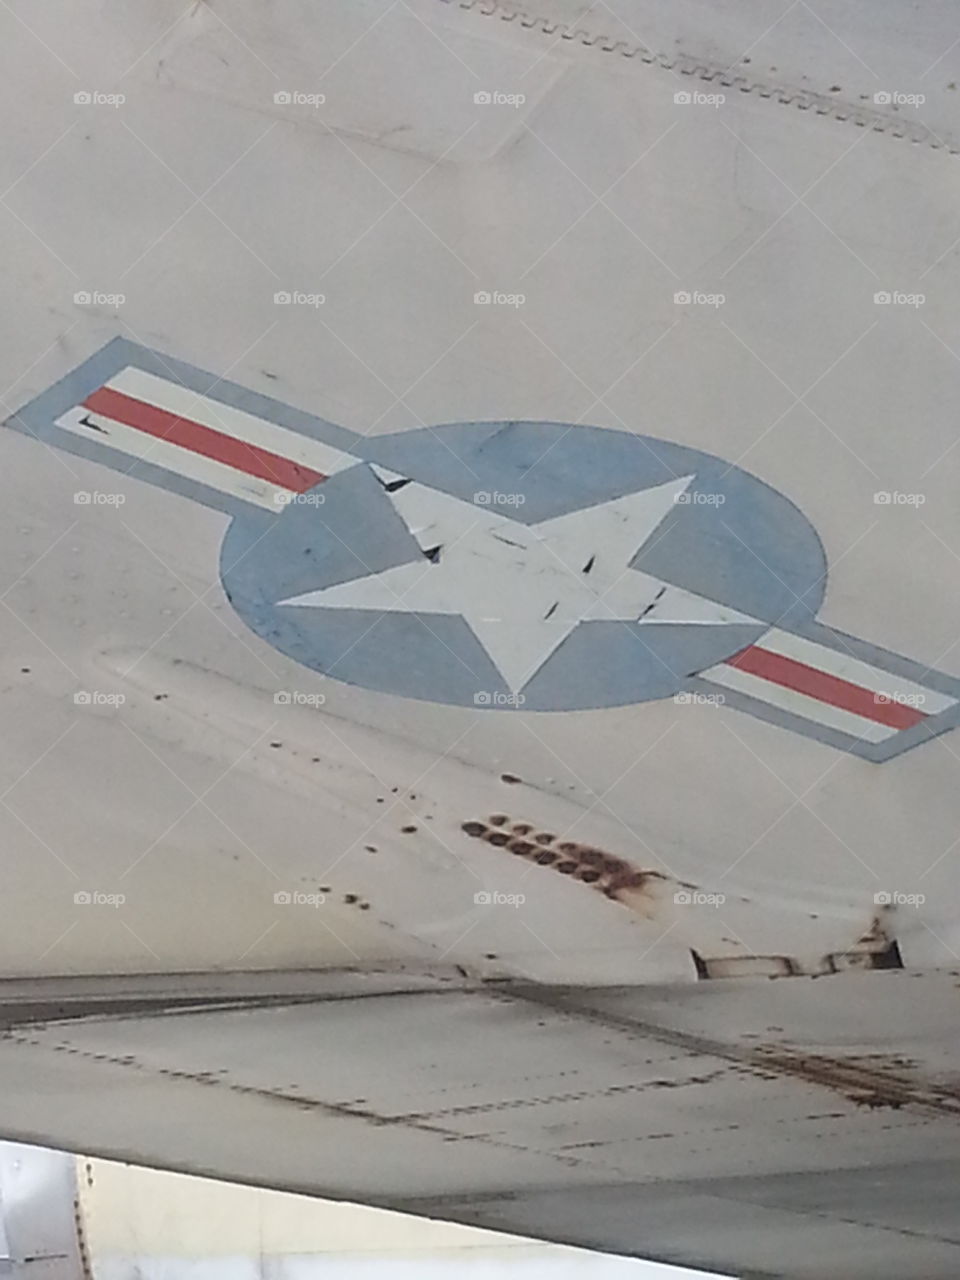 aircraft emblem